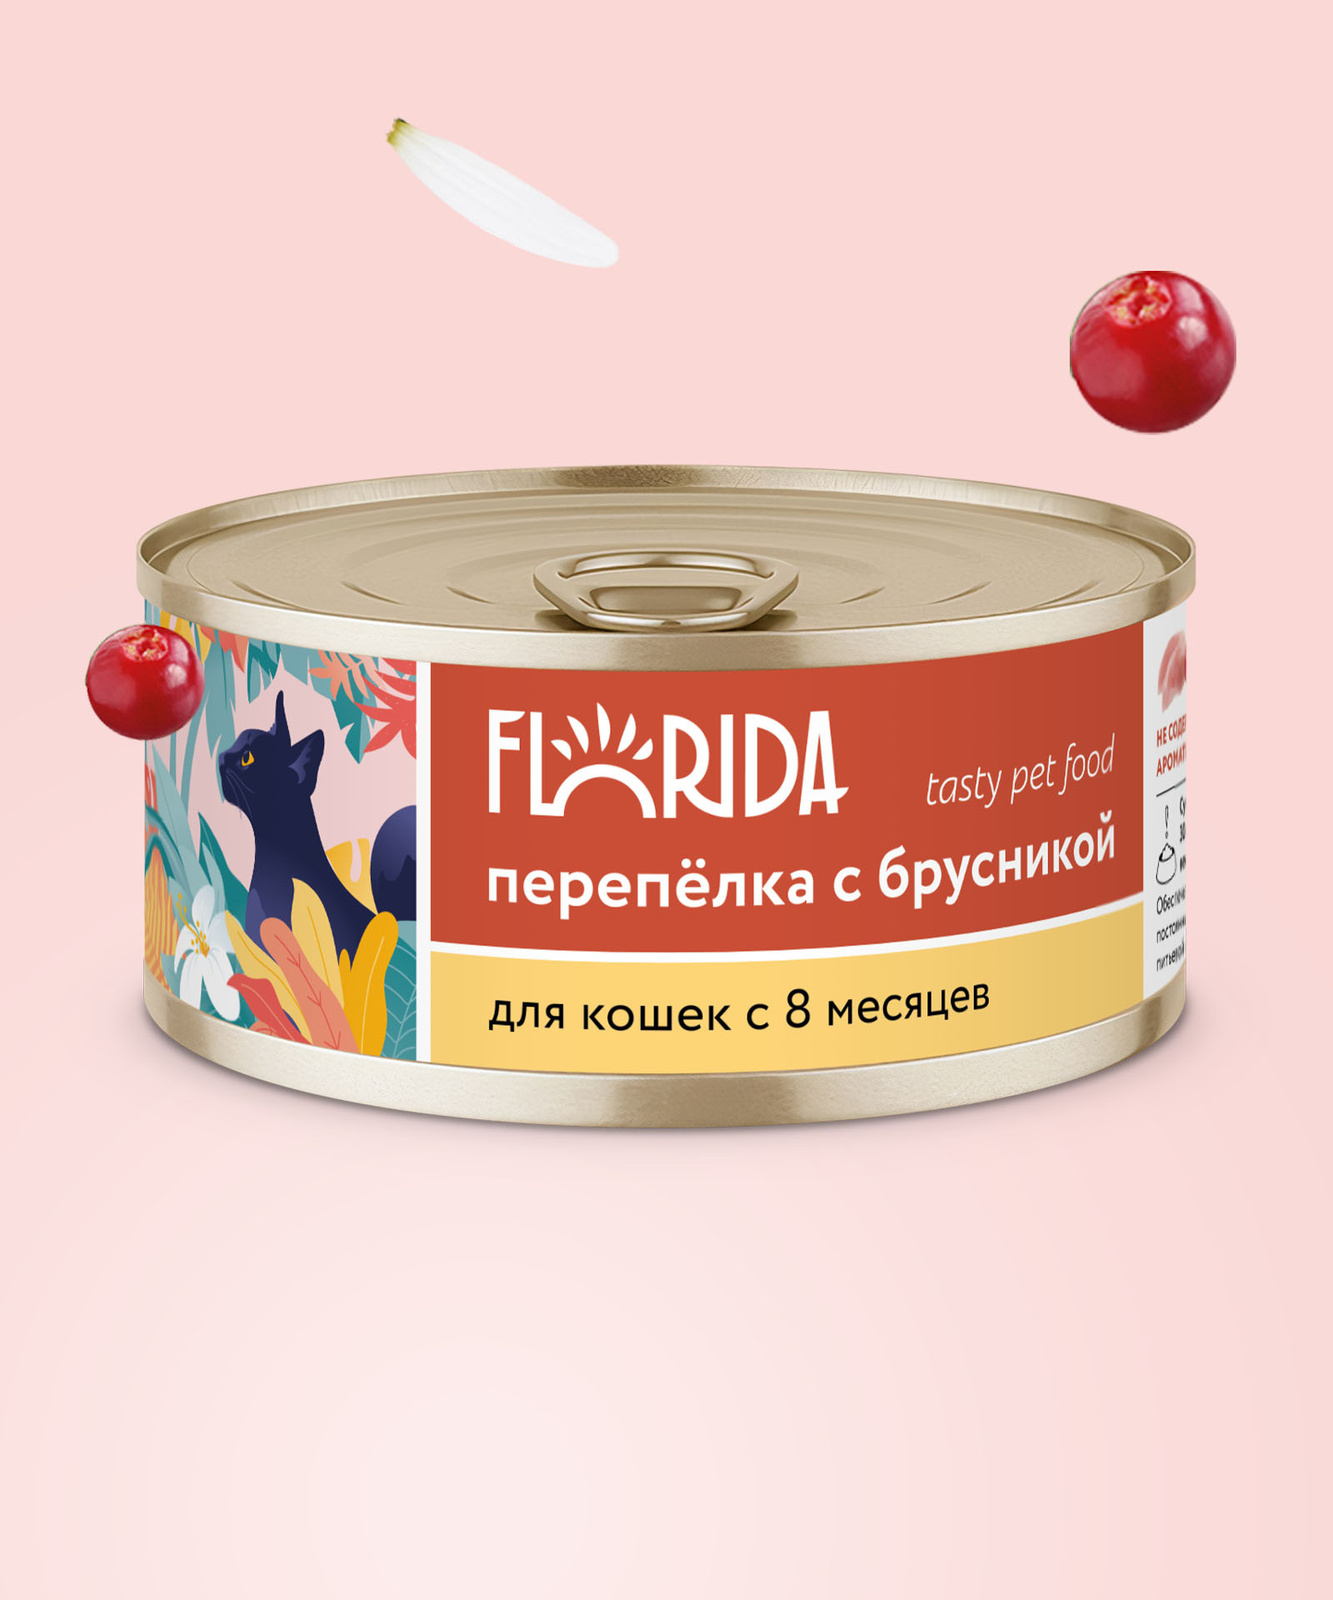 FLORIDA консервы FLORIDA консервы для кошек Перепёлка с брусникой (100 г) цена и фото